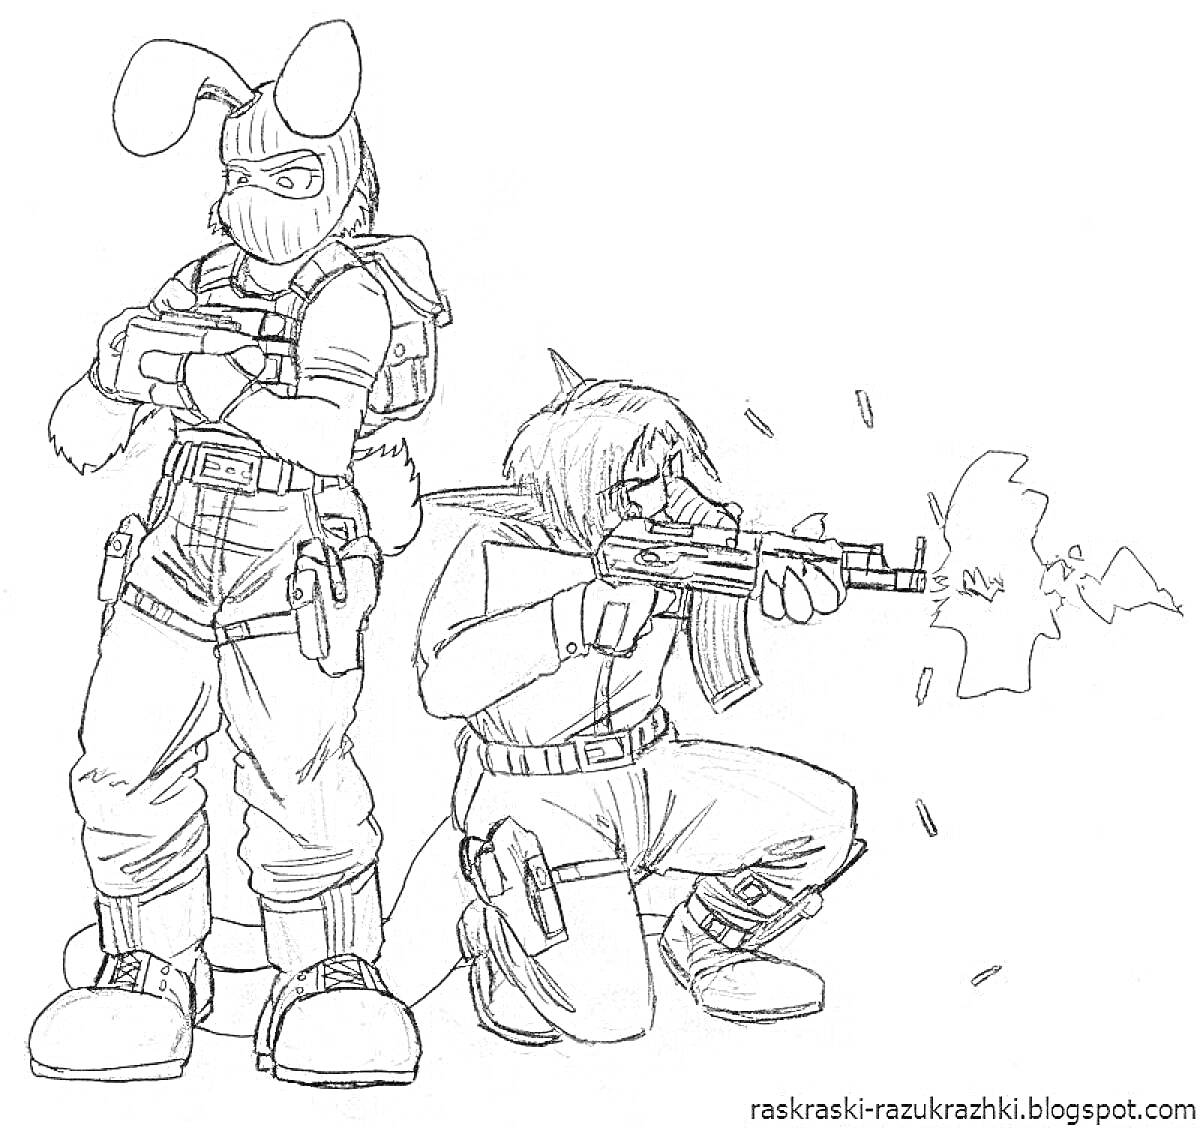 Раскраска Два игрока из Standoff 2 - один стоит с крестом на груди и в маске с ушами, другой стреляет из автомата.